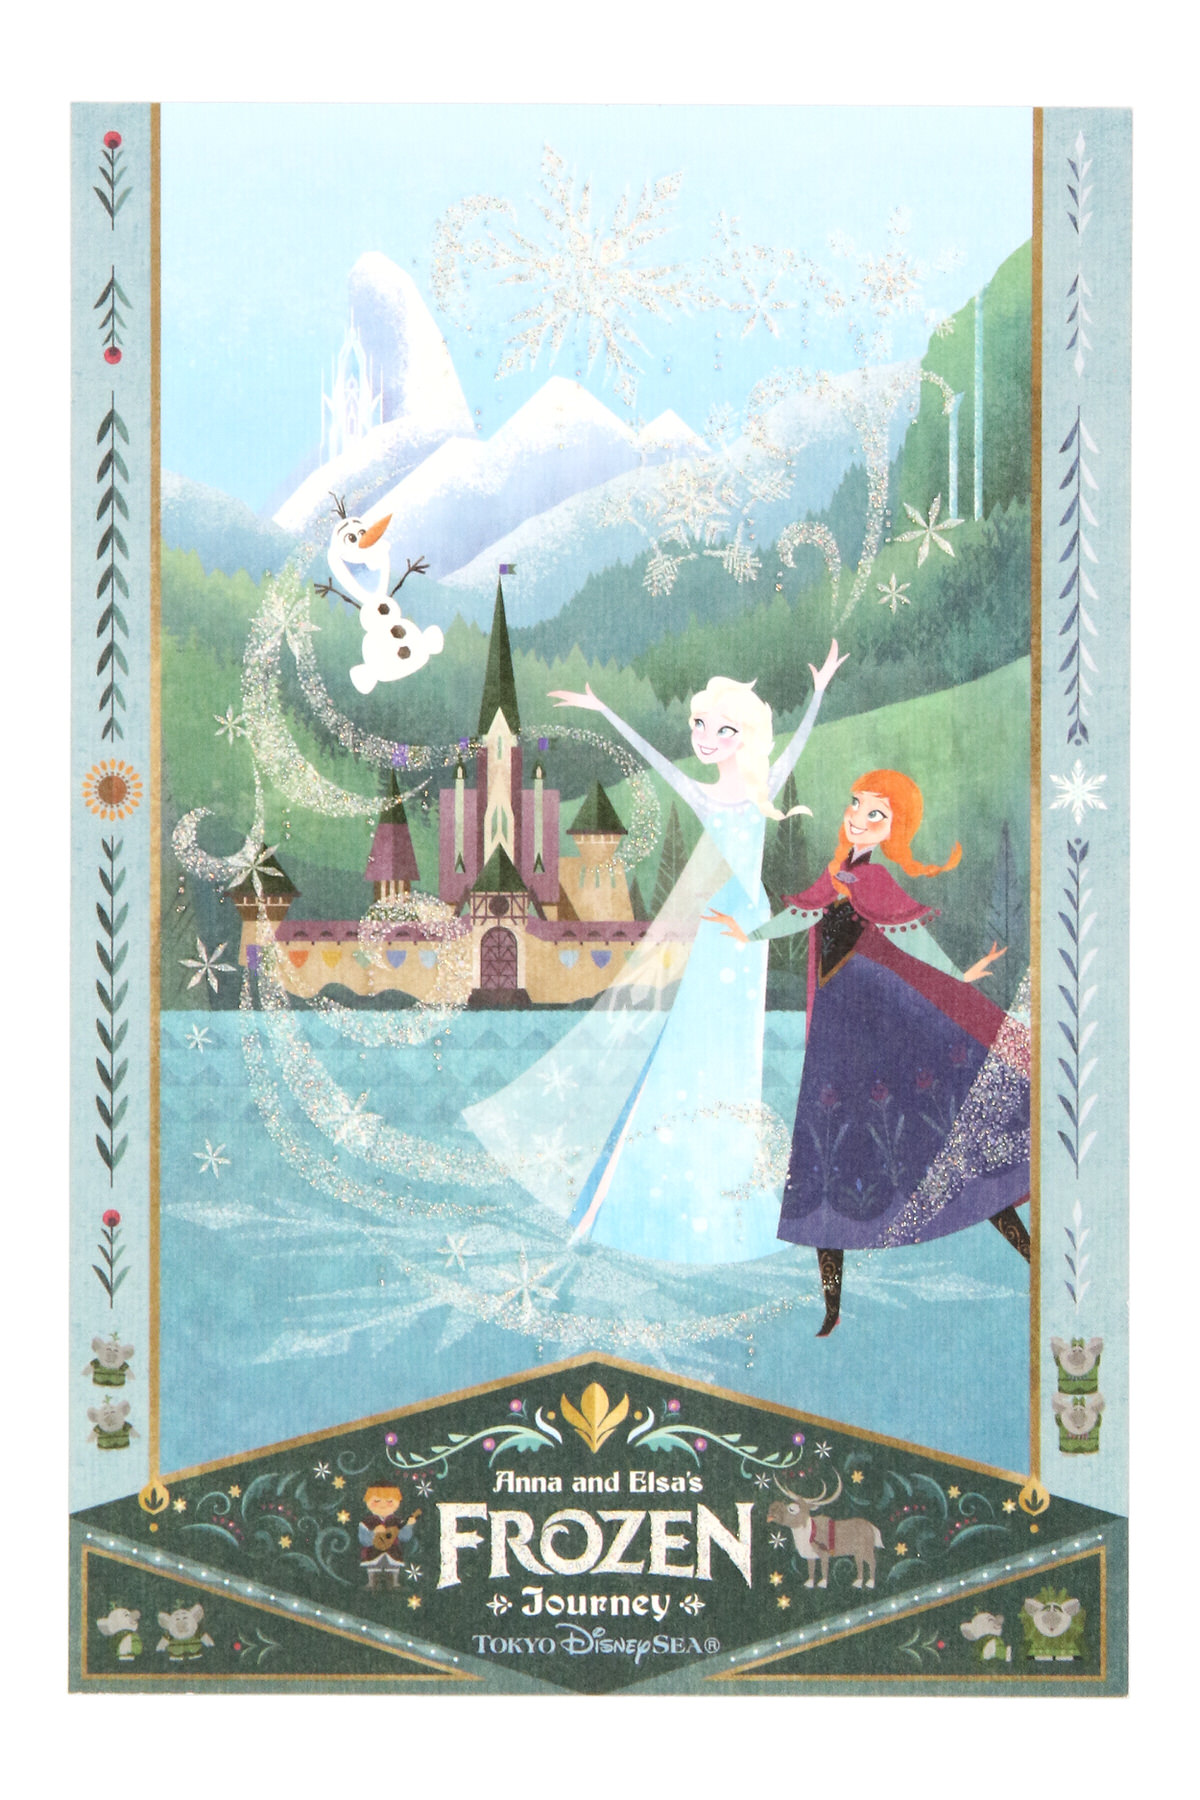 アナと雪の女王』エリア｢フローズンキングダム｣デザイン！東京 